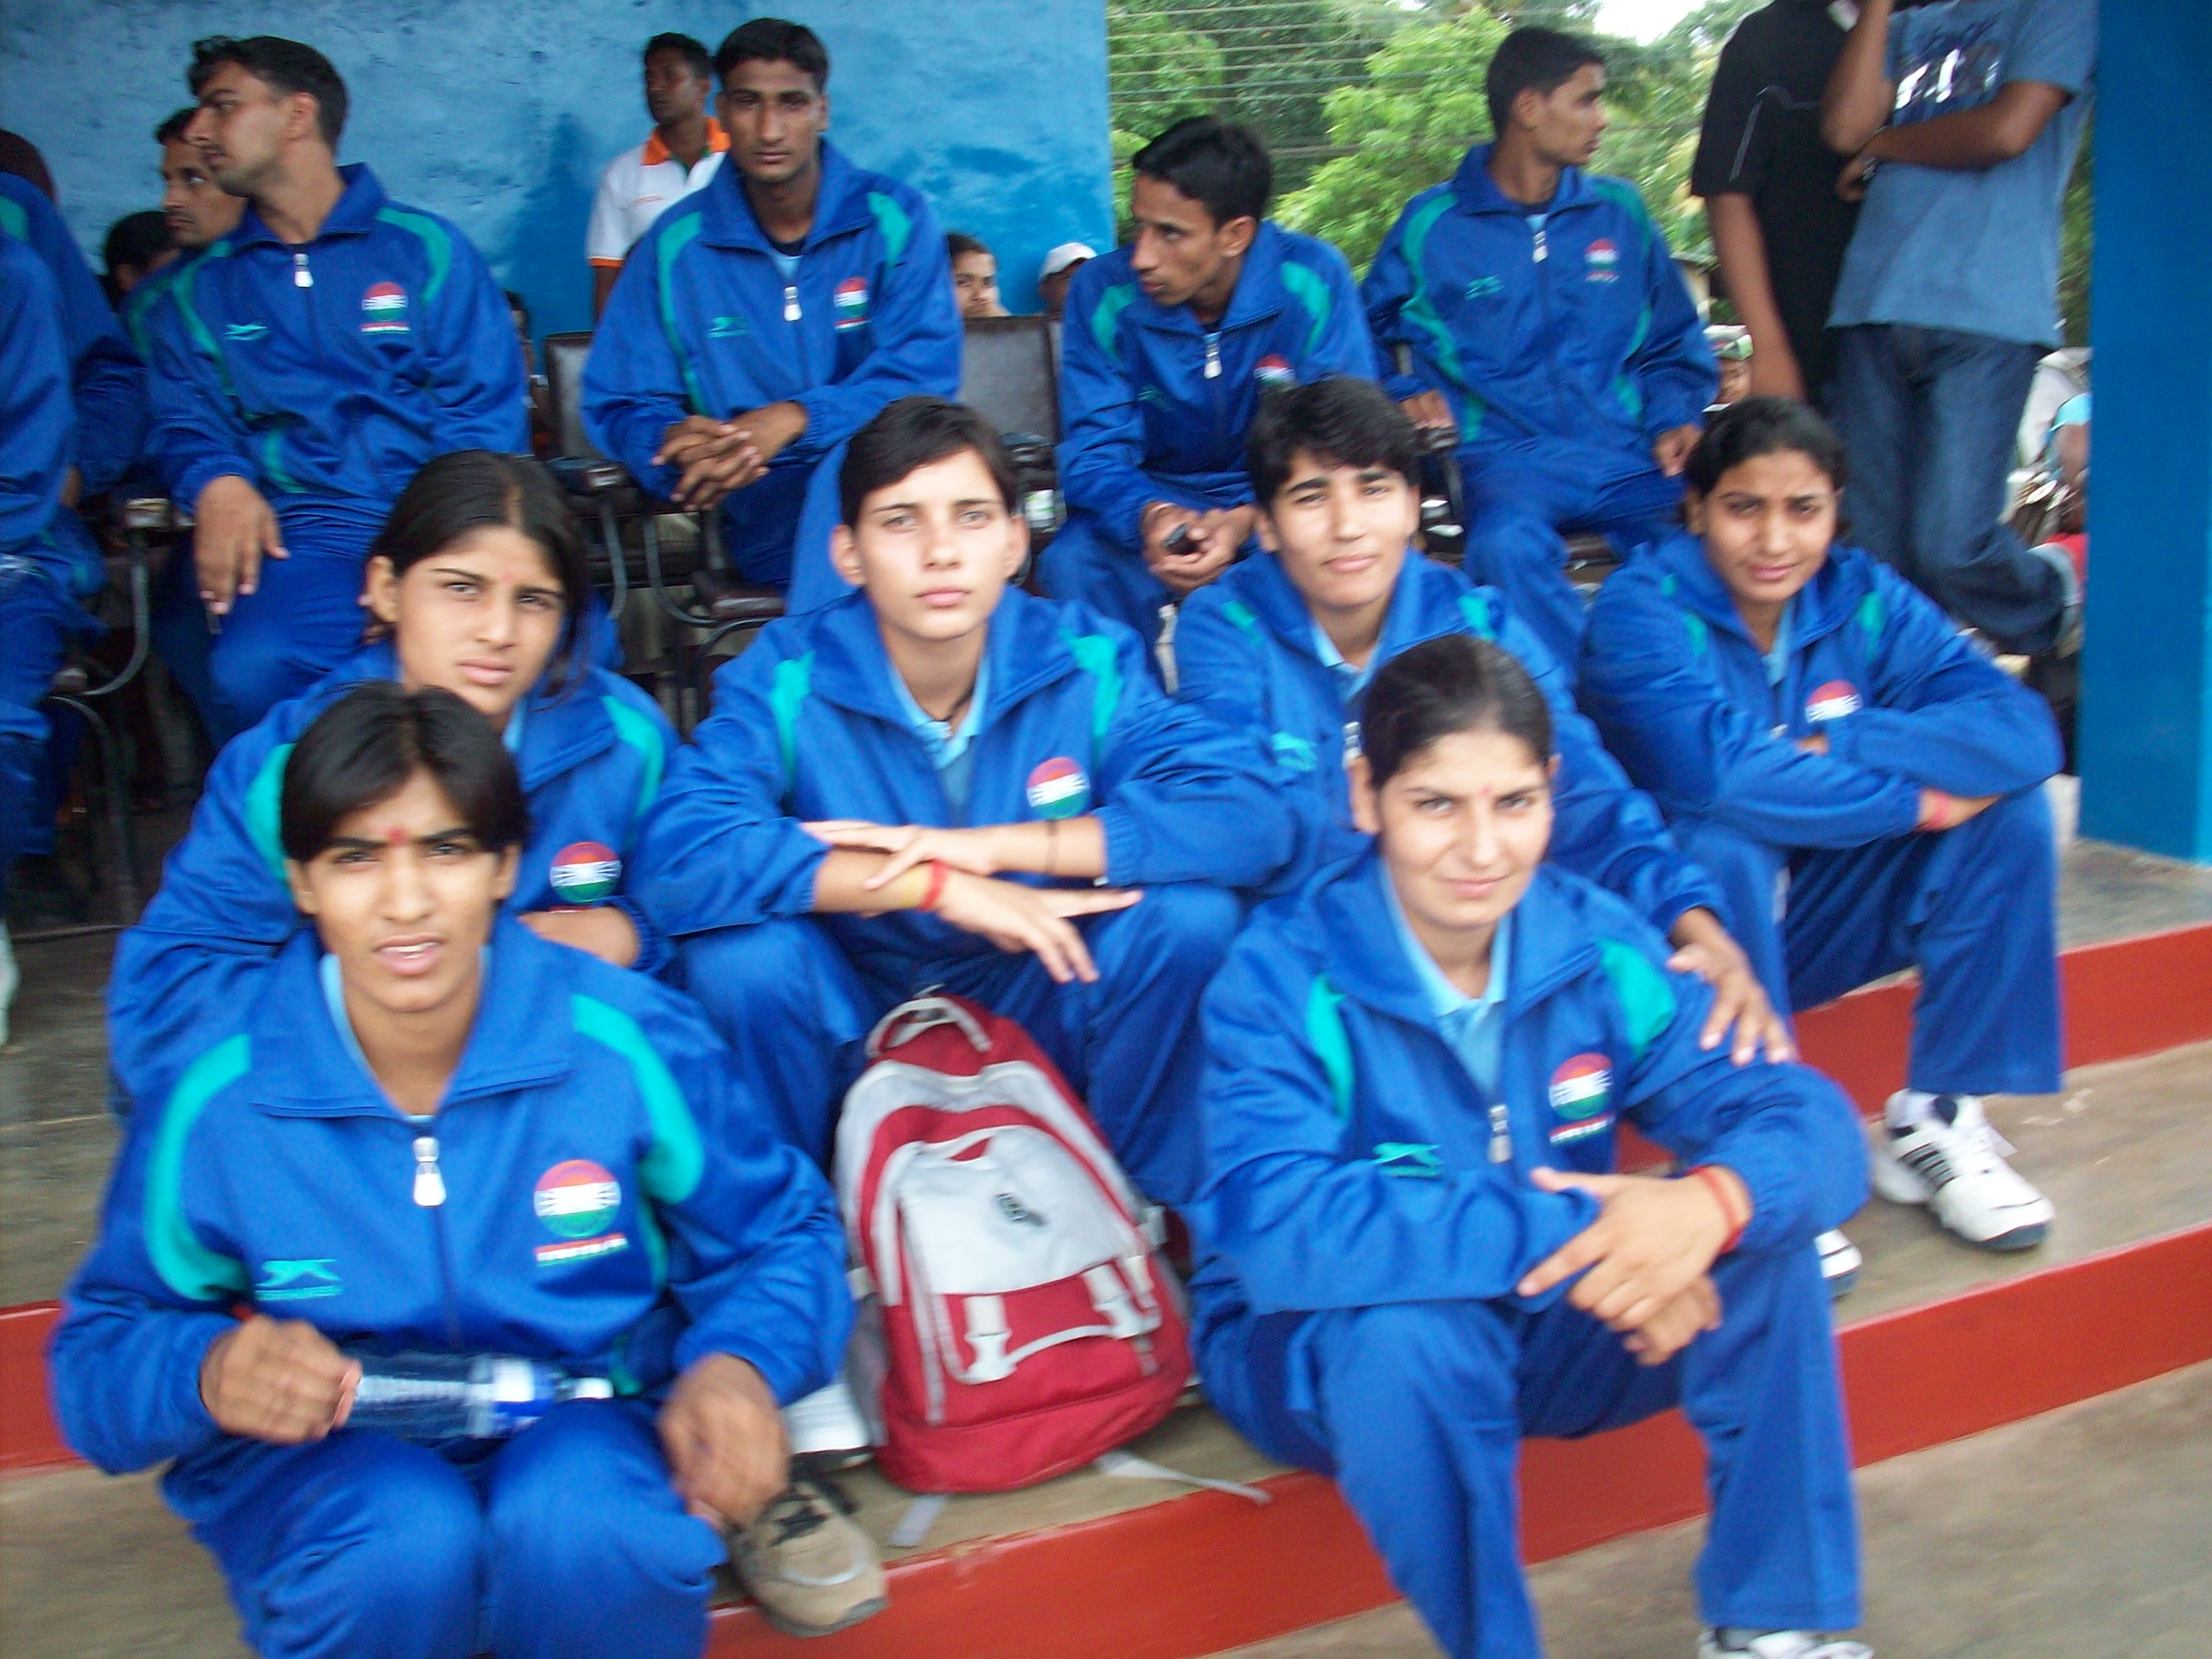 india of kabaddi Amateur federation